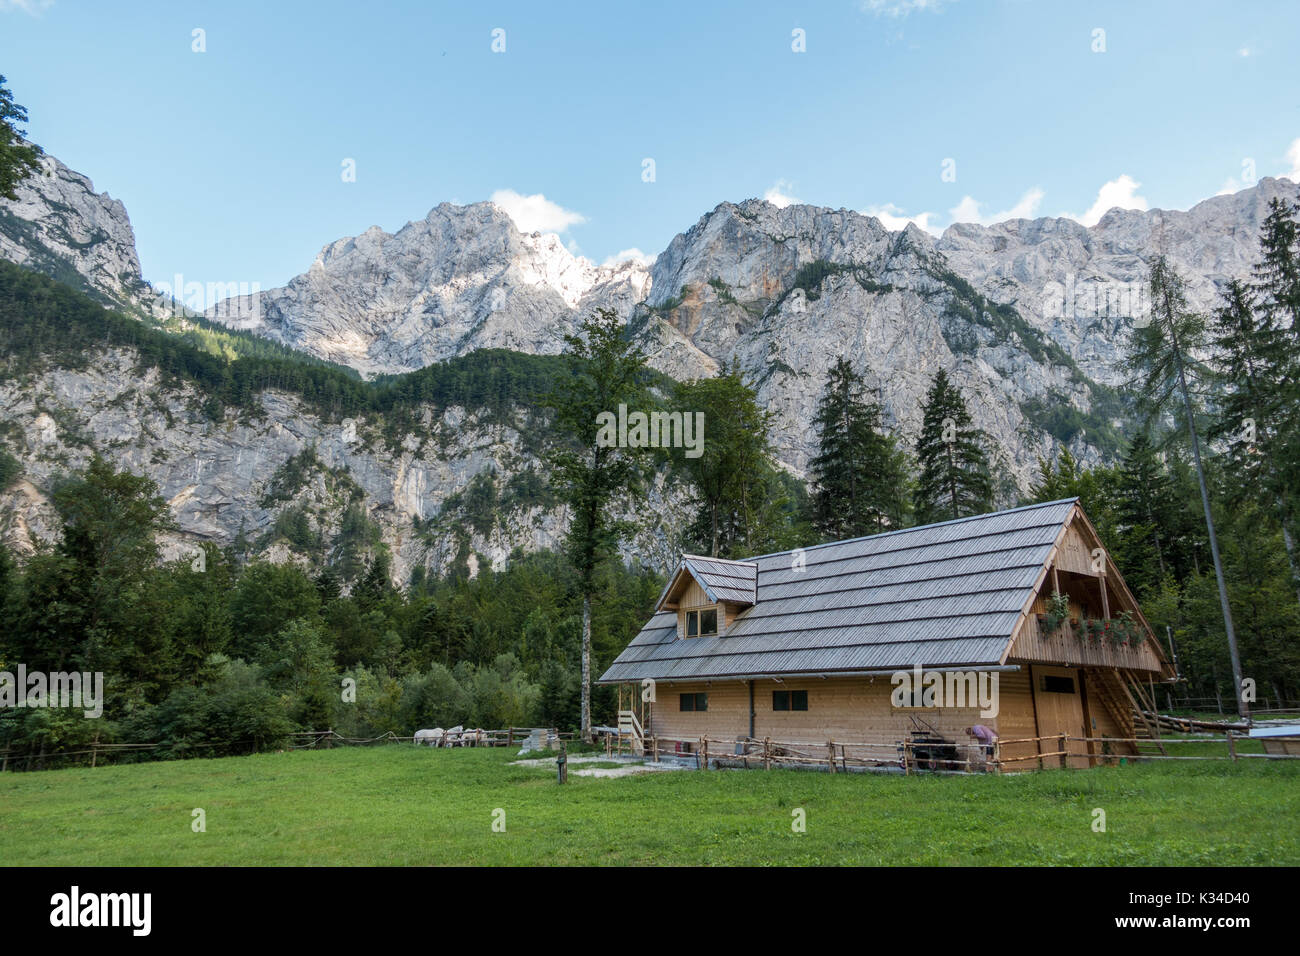 Chalet de montagne, cabane dans les Alpes, situé dans la région de Robanov kot, la Slovénie, la randonnée et escalade lieu populaire avec picturescue view Banque D'Images